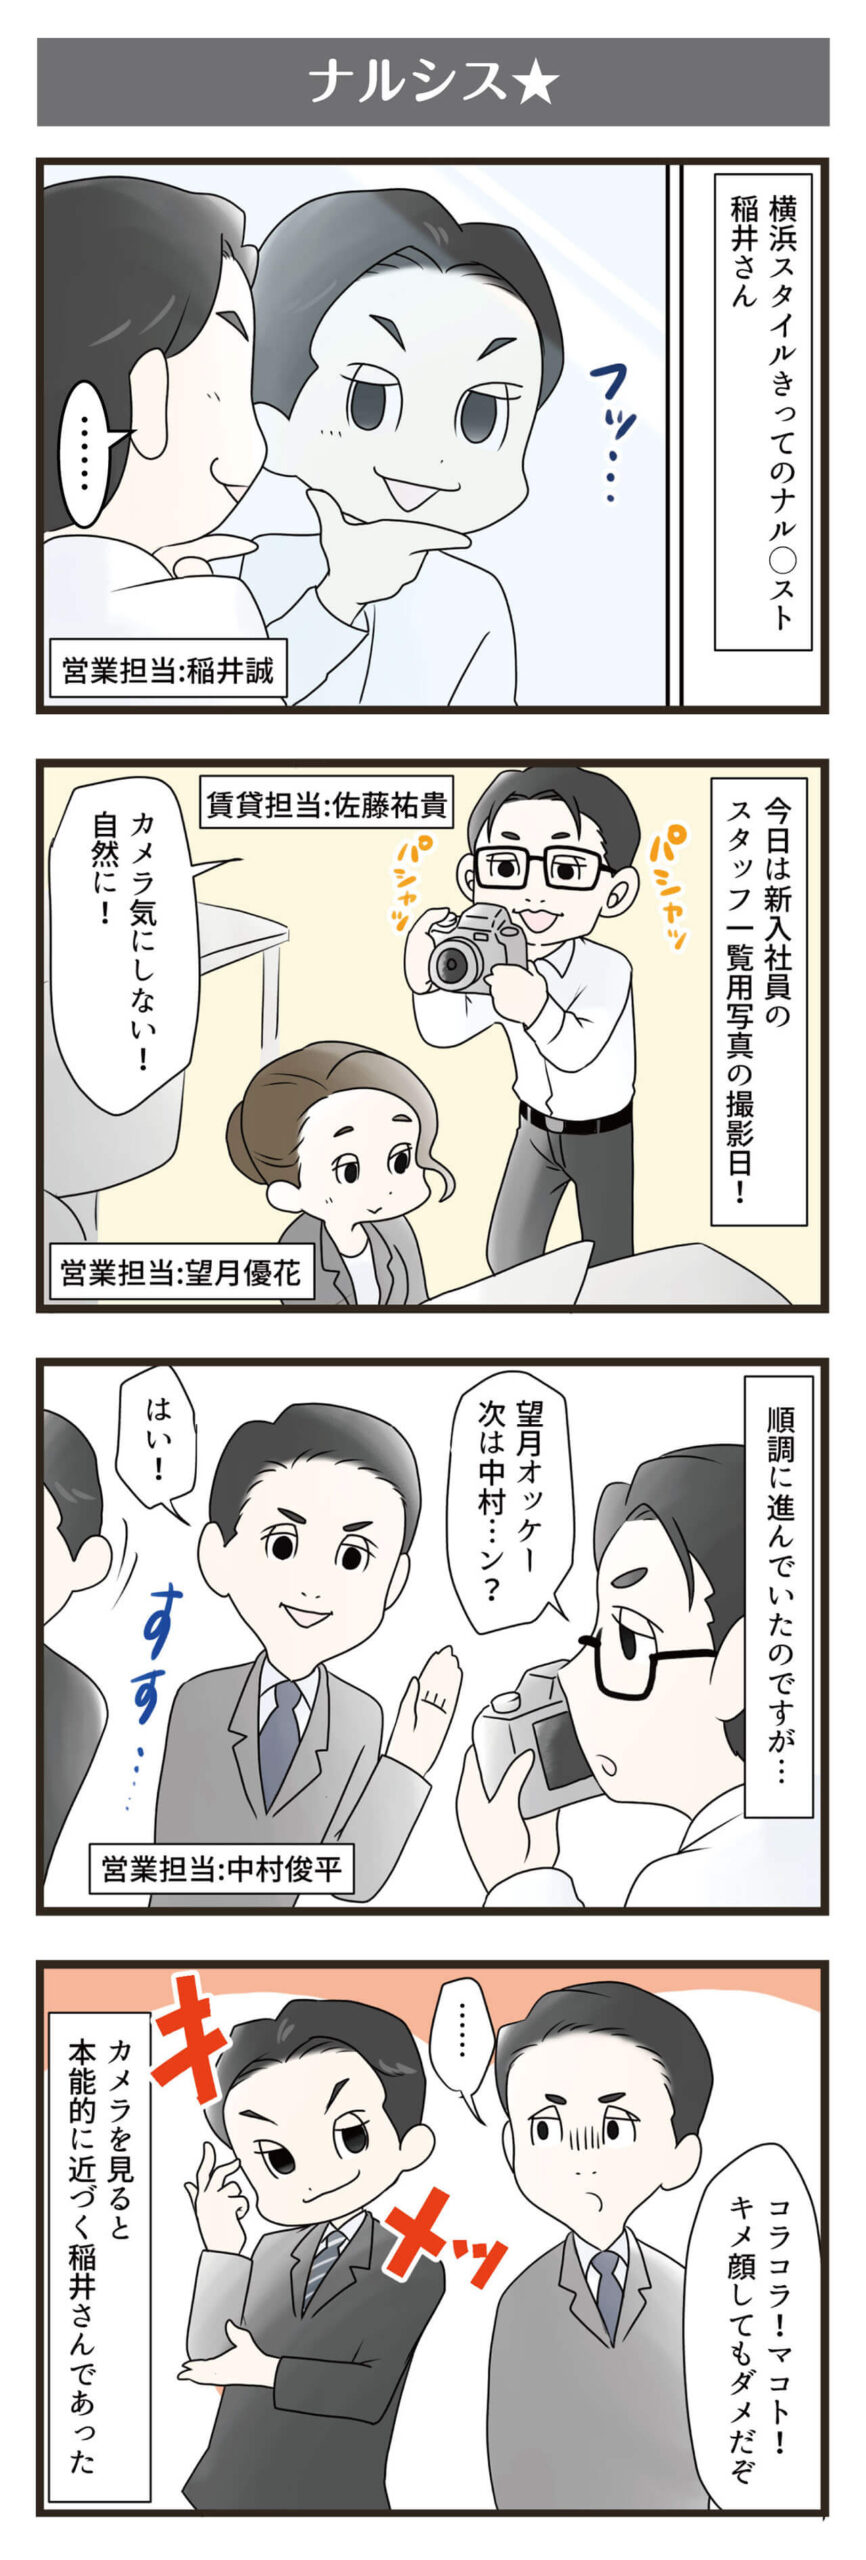 横浜スタイル4コマ漫画9月分